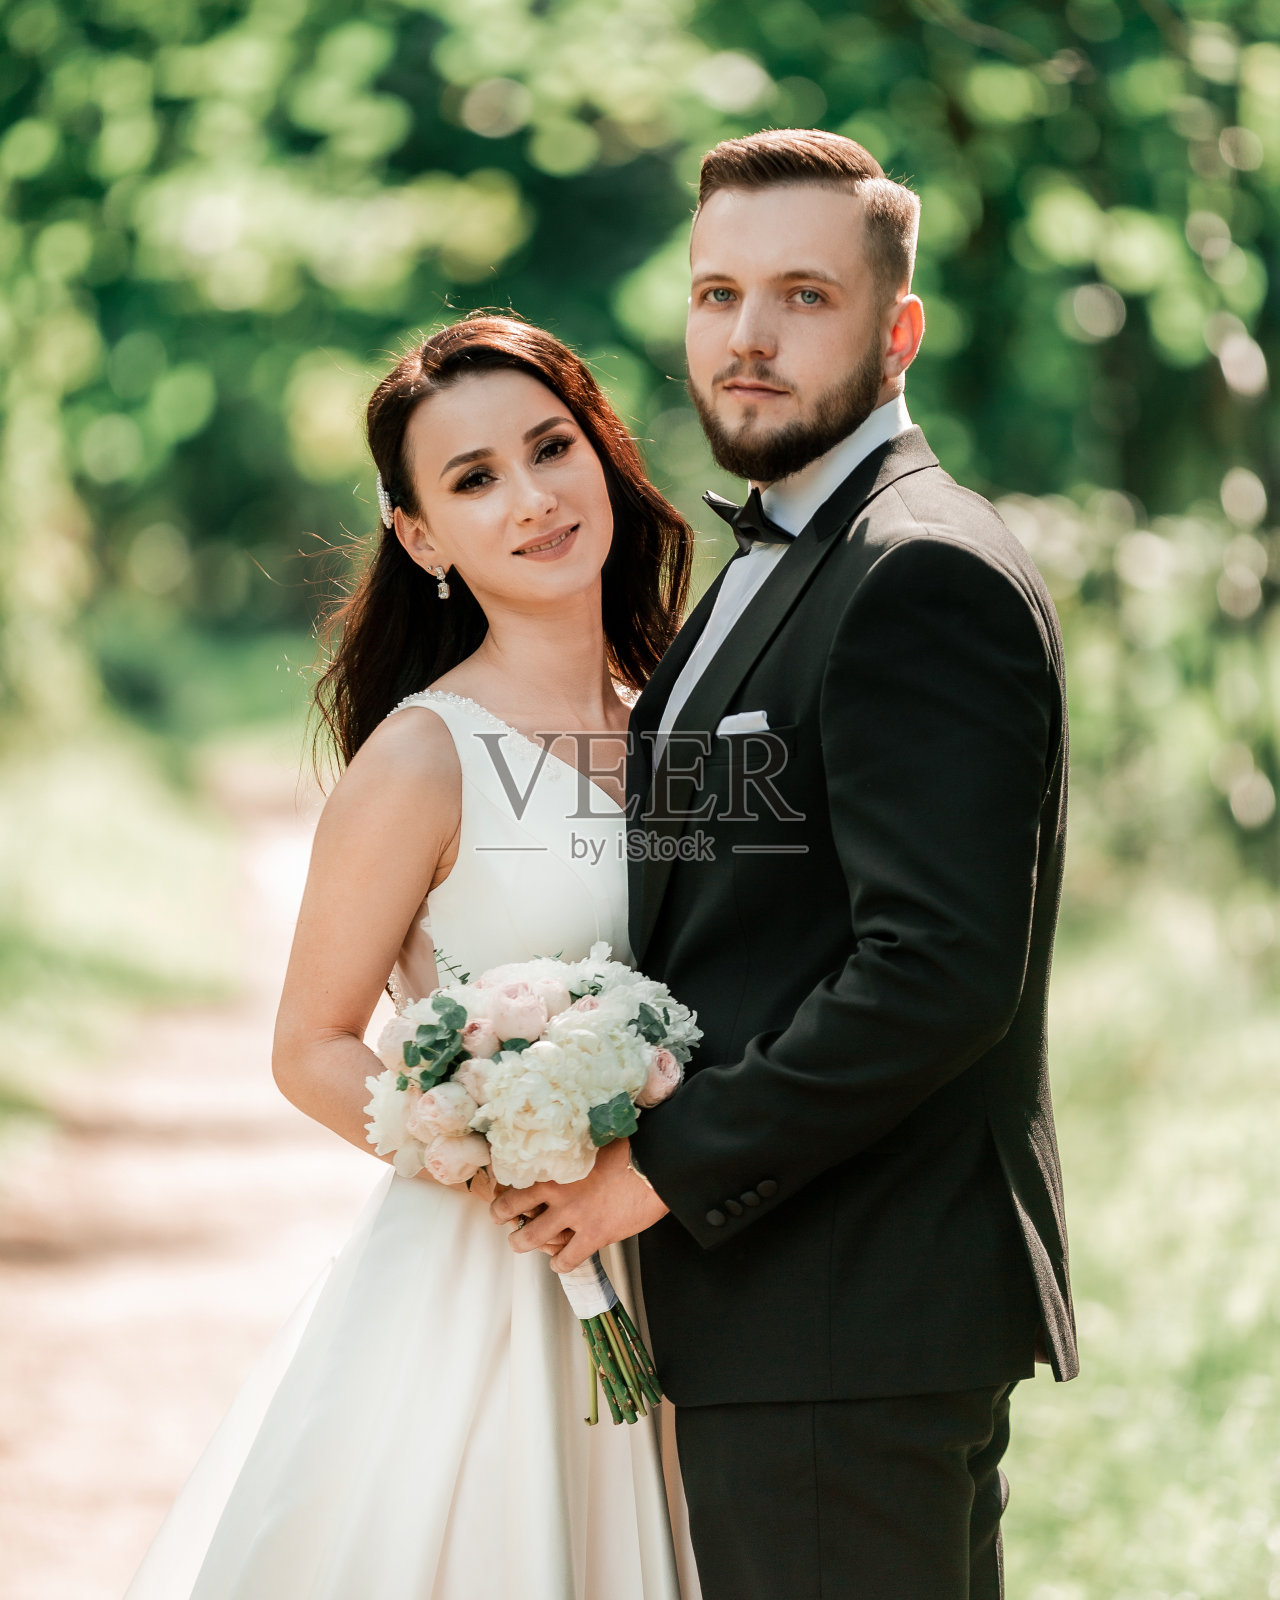 幸福的新娘和新郎站在婚礼拱门下照片摄影图片